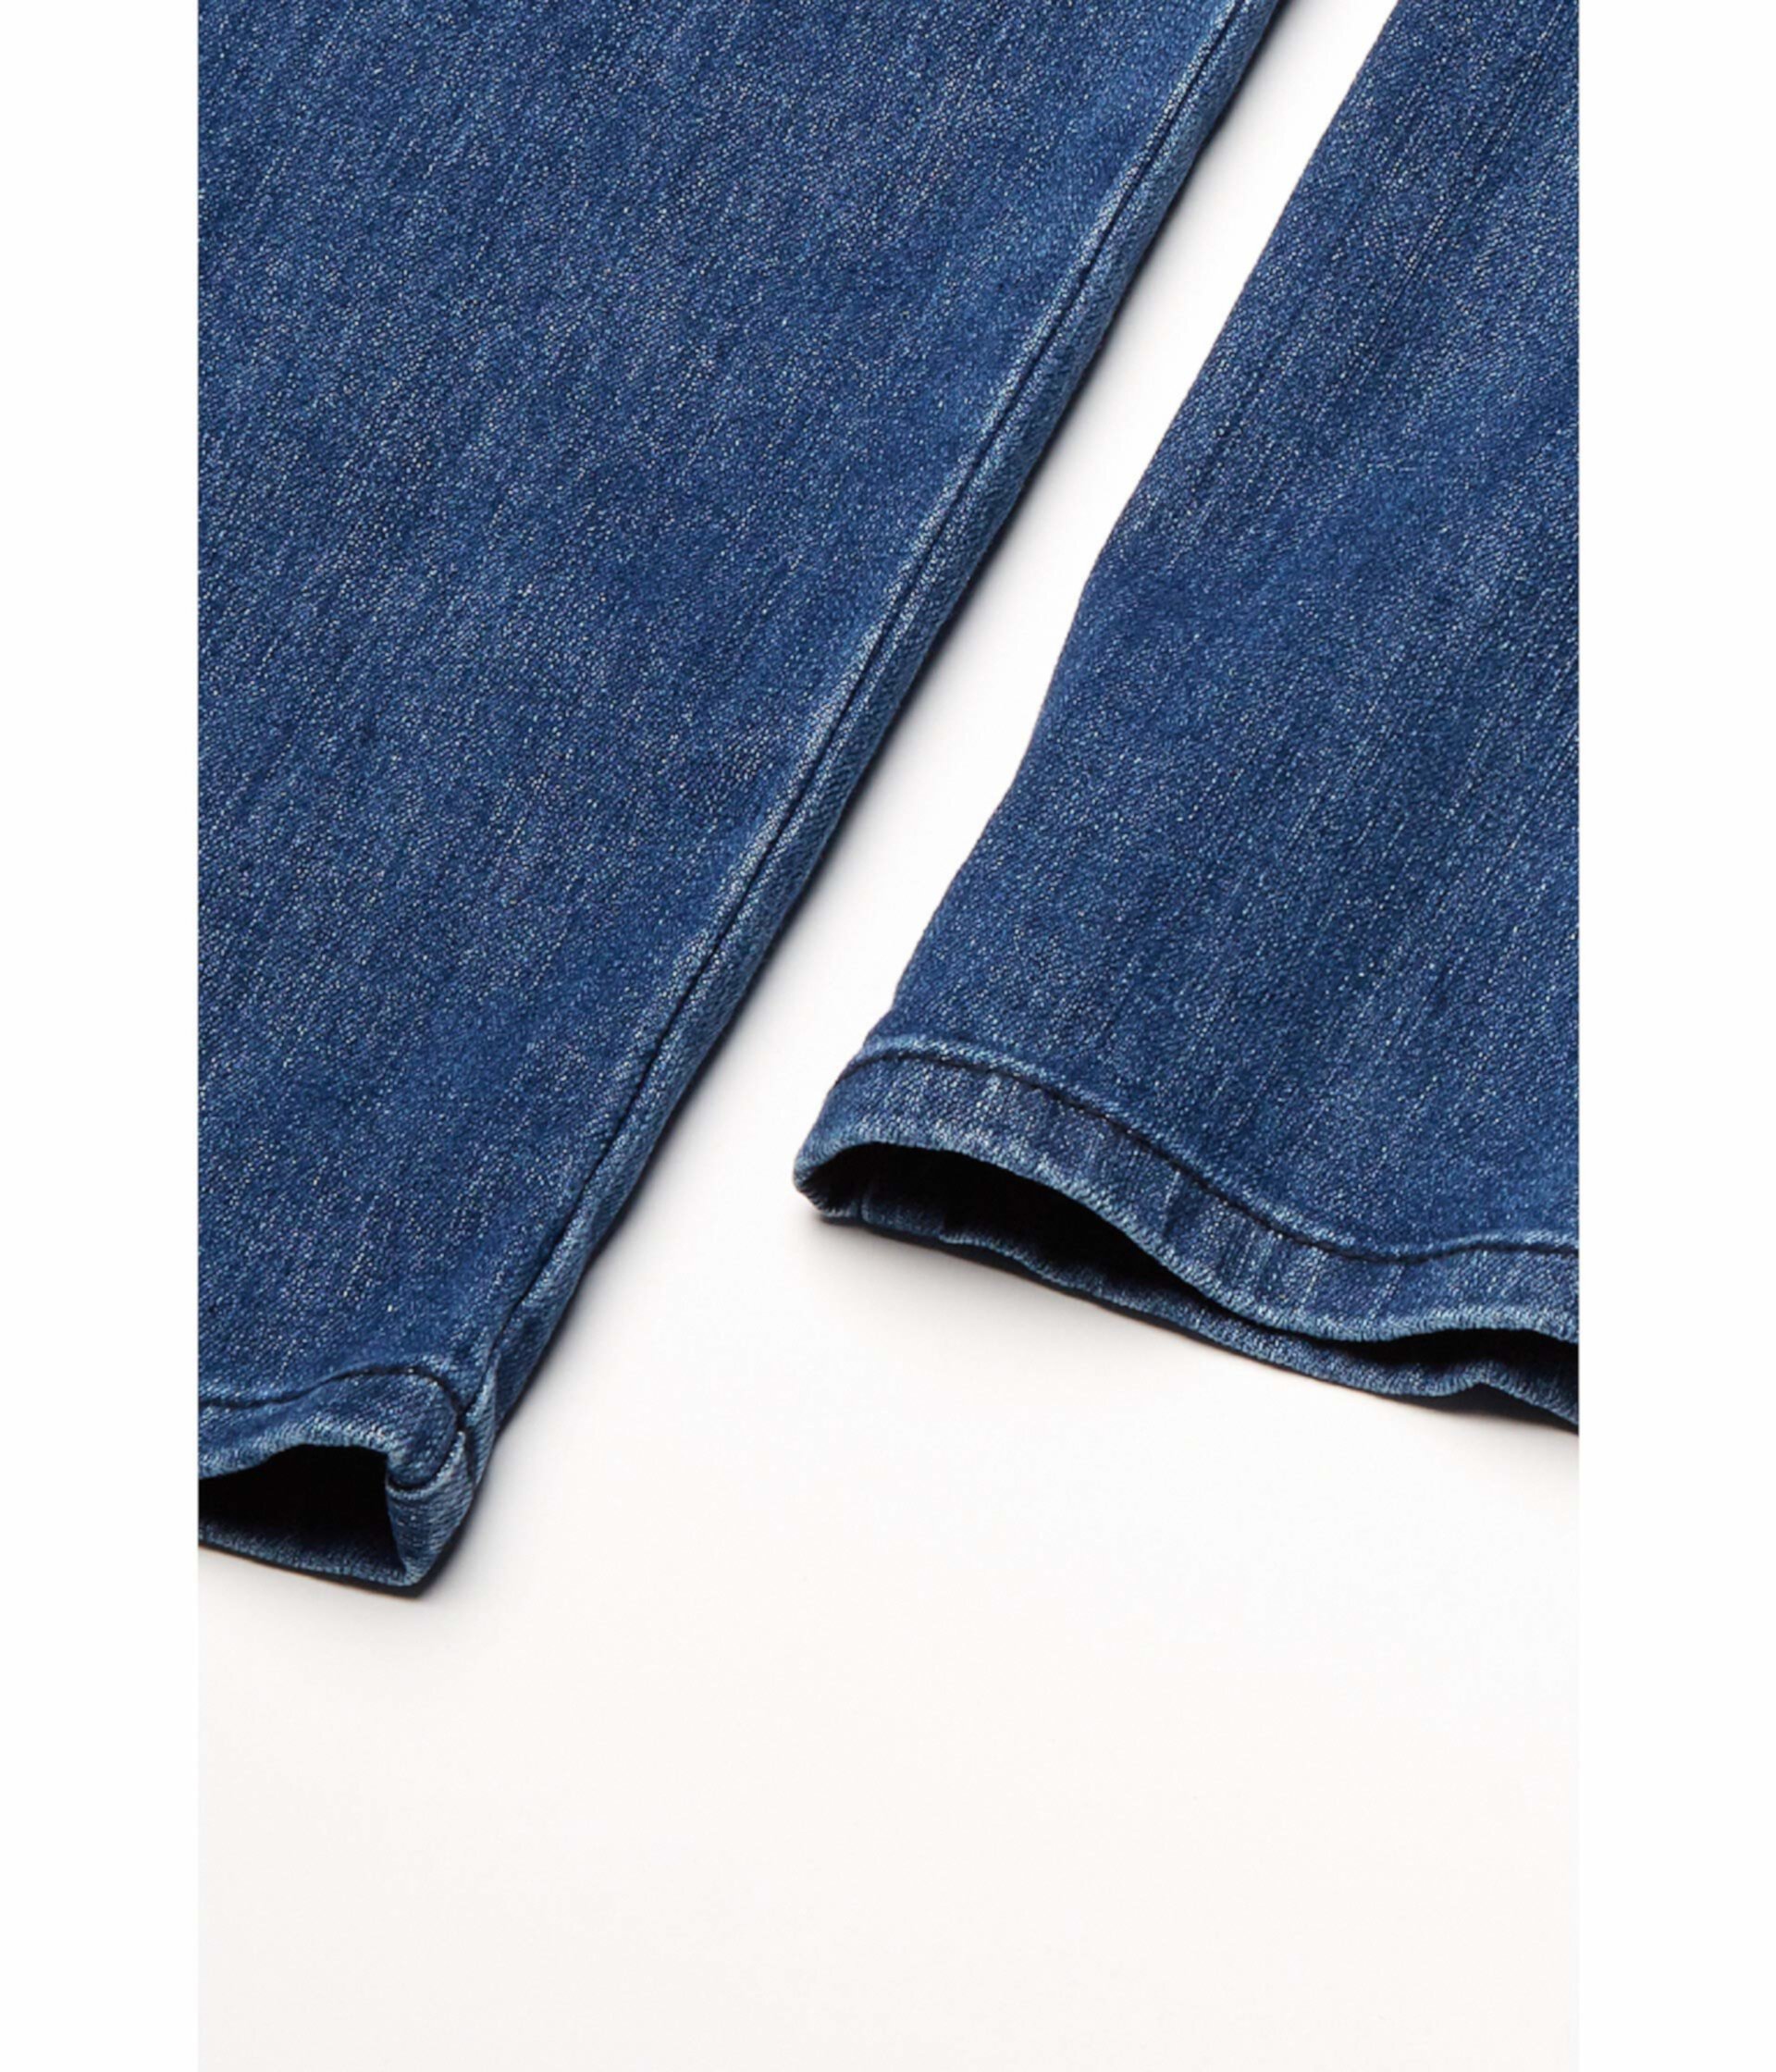 Классические прямые джинсы Seated Classic с магнитной застежкой и карманами на бедрах цвета Peyre Medium Seven7